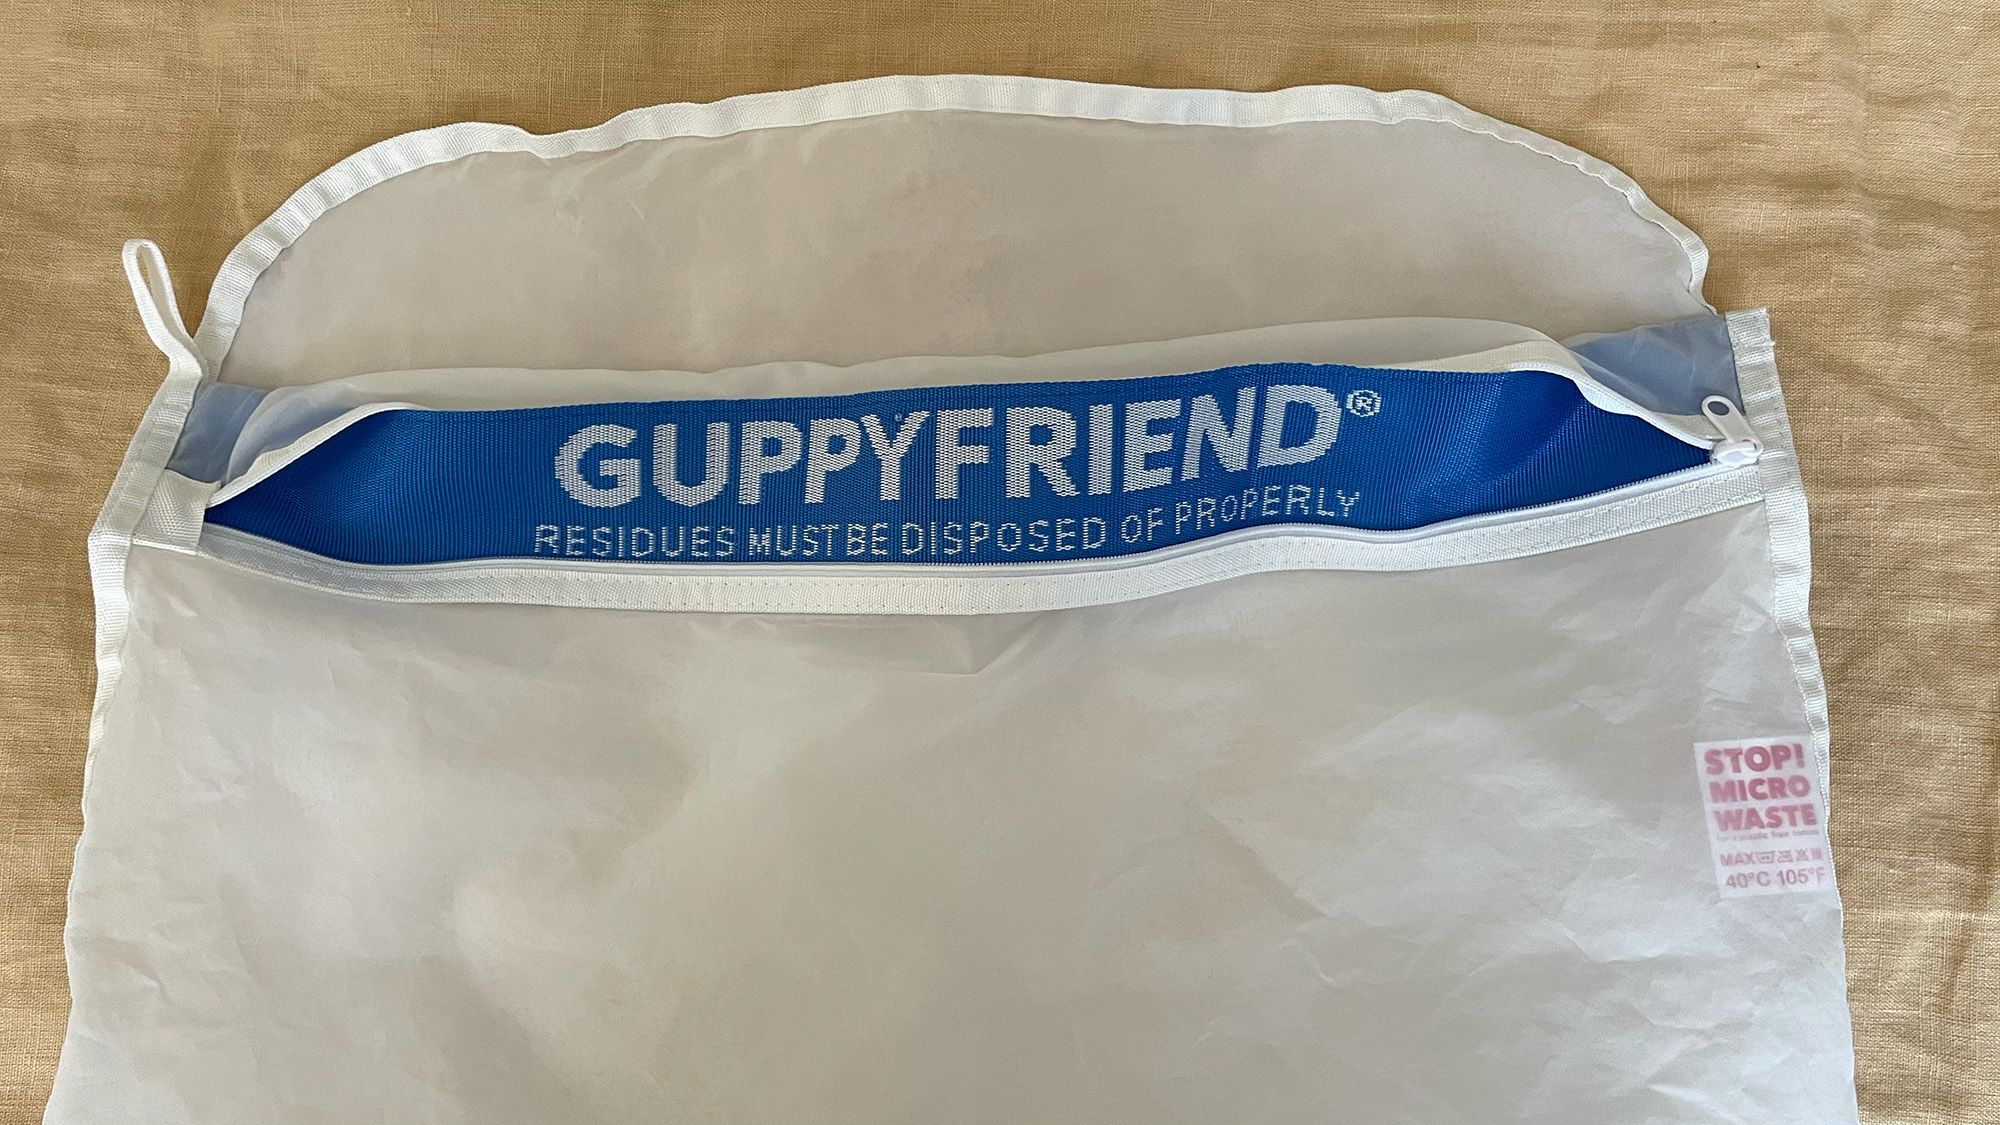 Guppyfriend Washing Bag – Oy surf